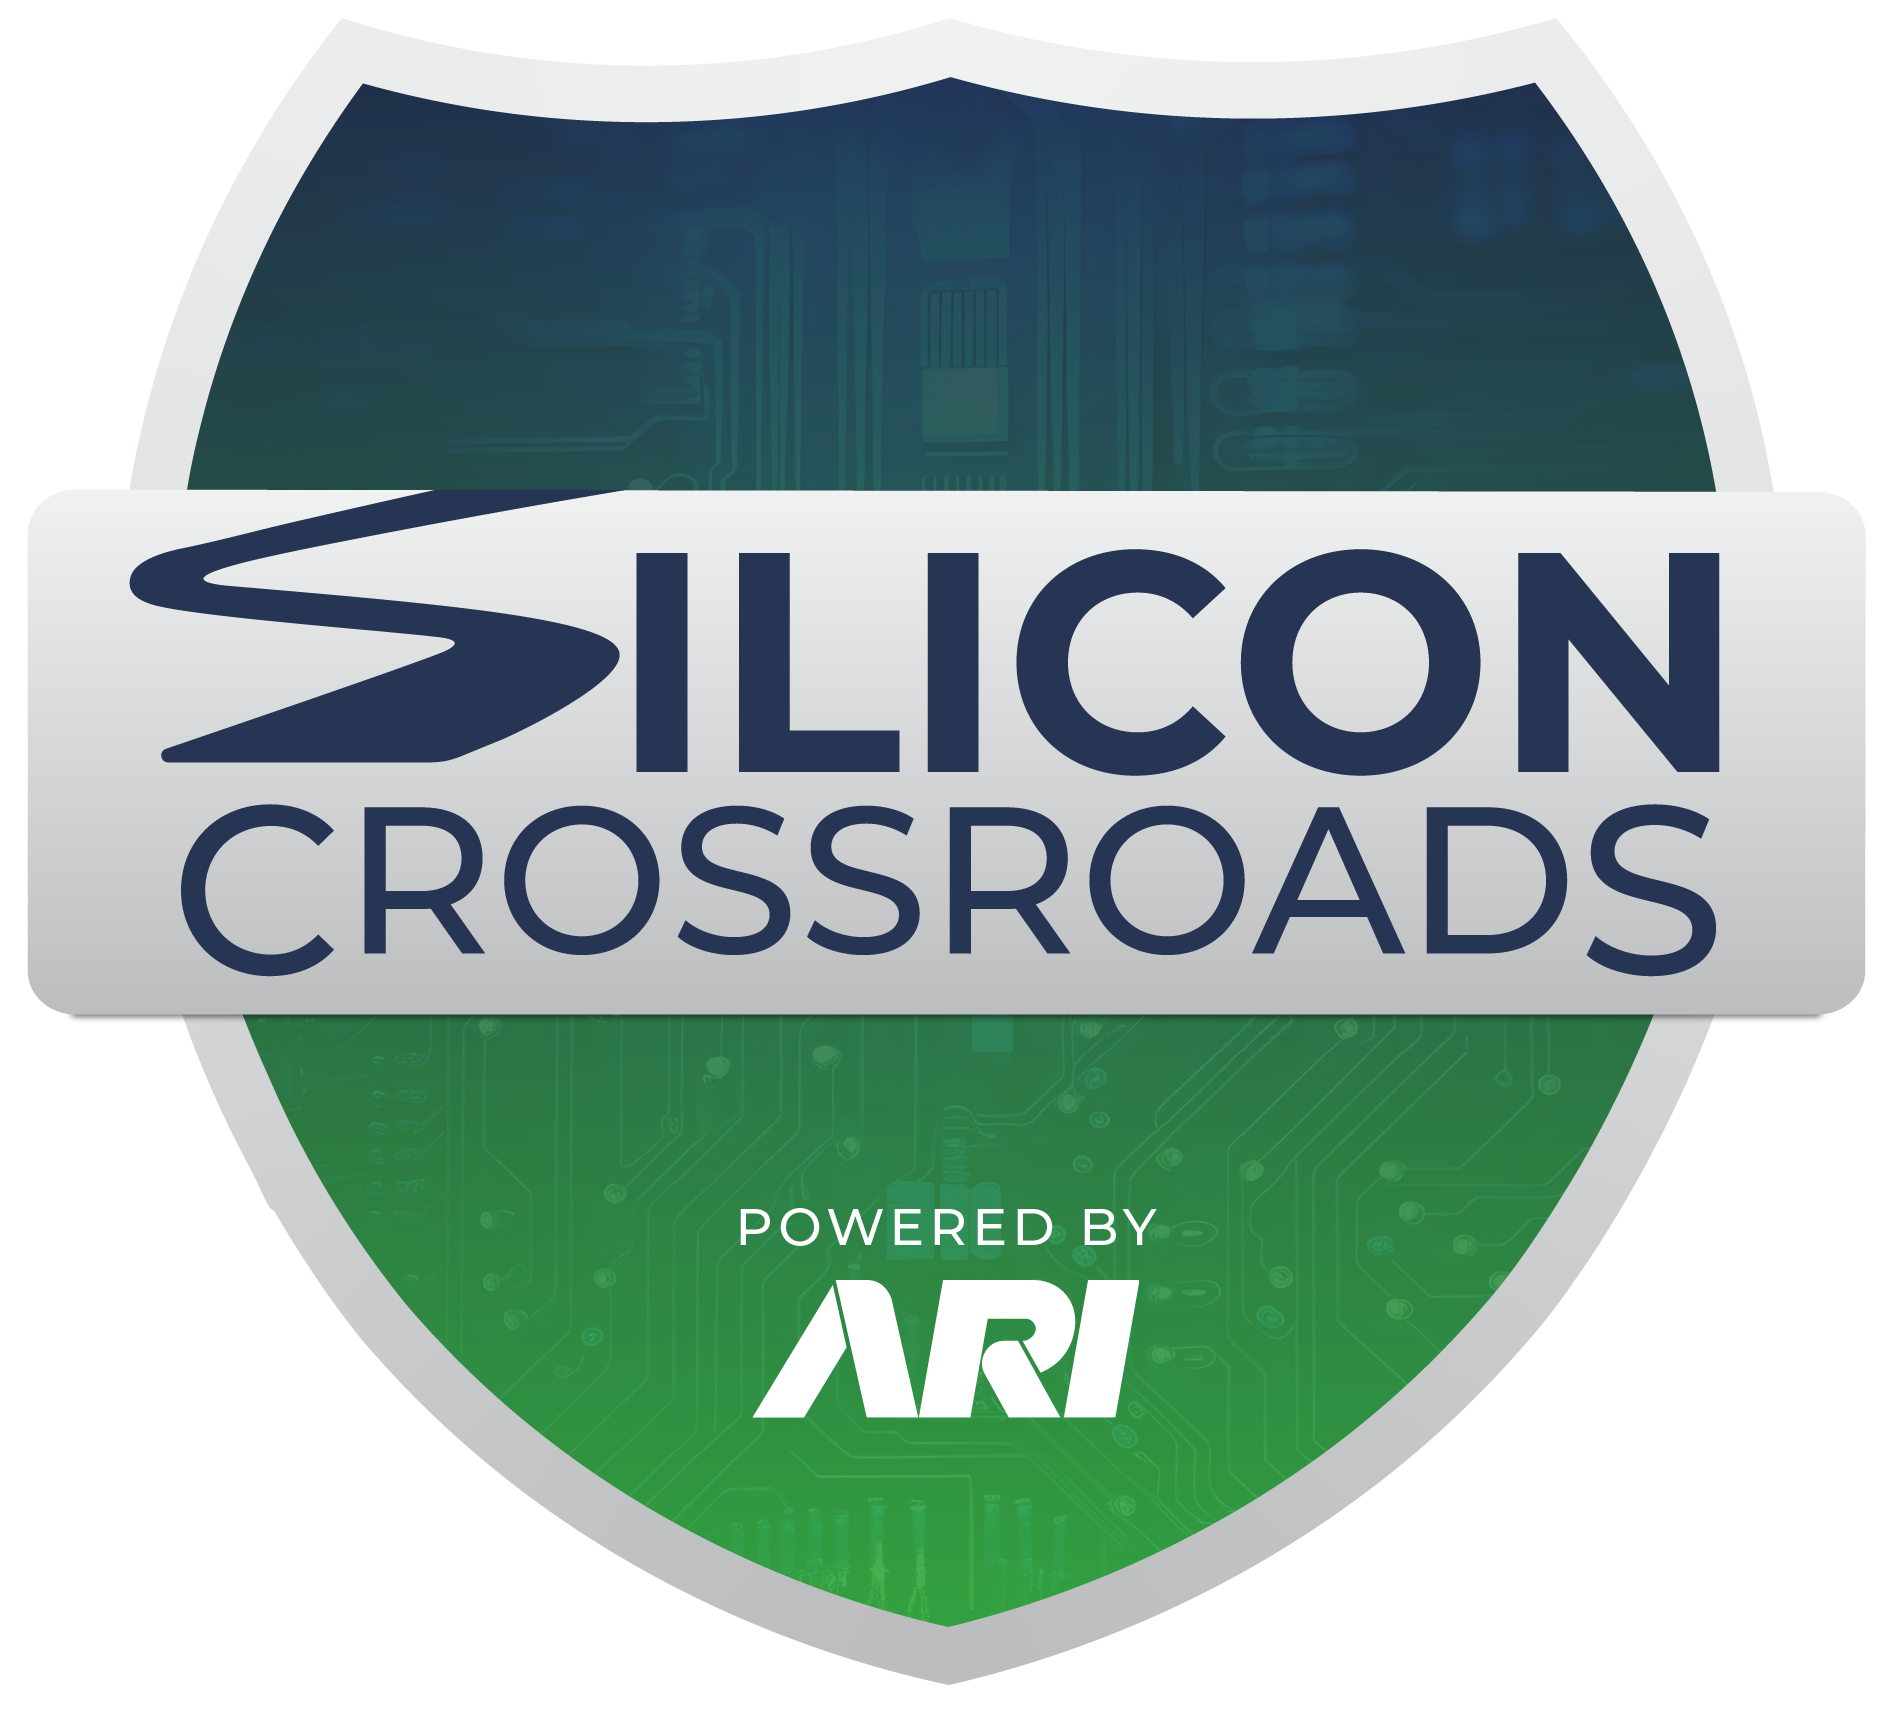 Sillicon Crossroads